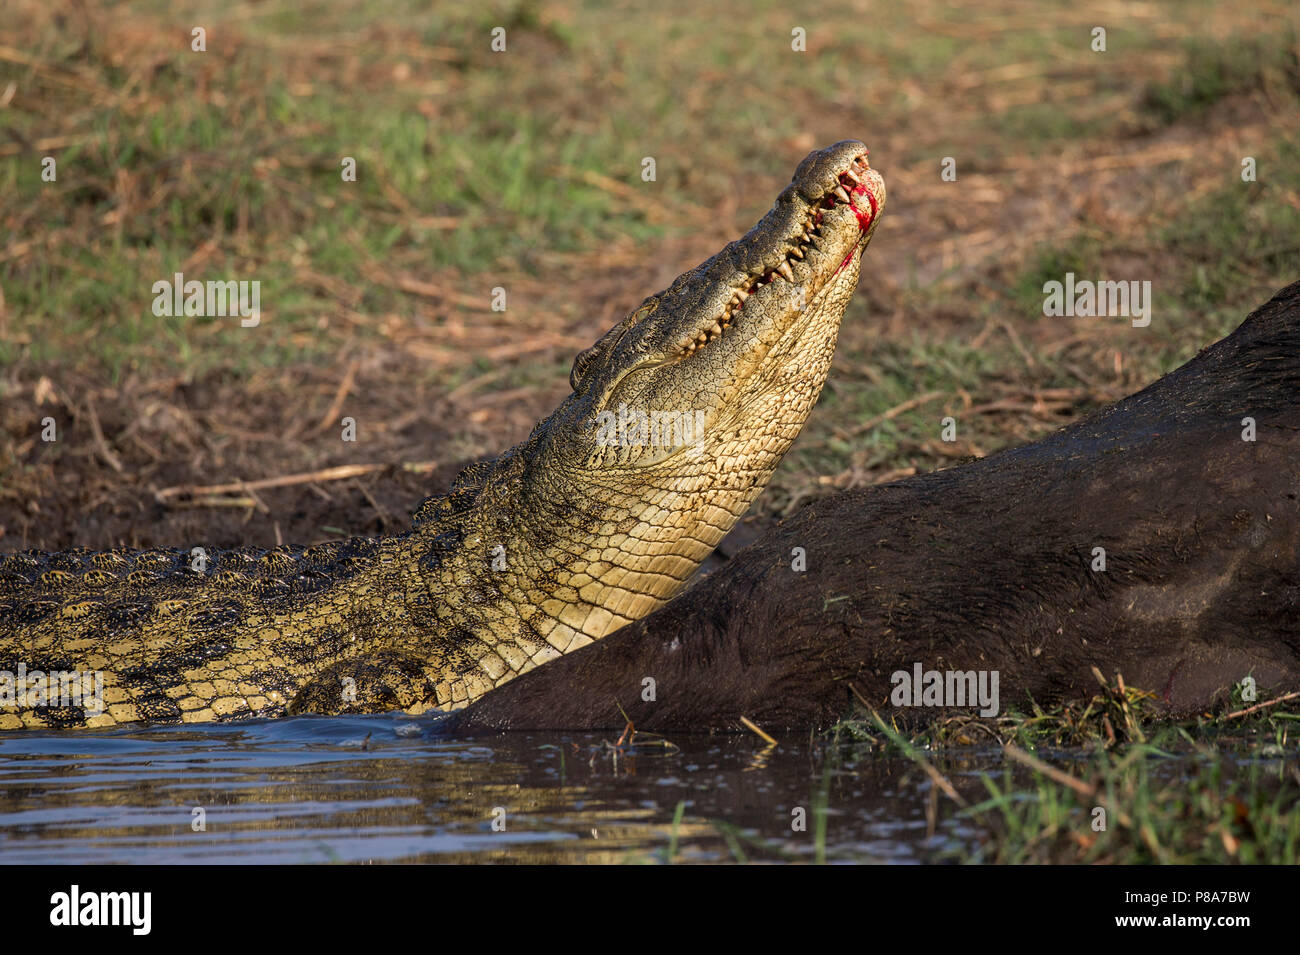 Le crocodile du Nil (Crocodylus niloticus) se nourrissant de buffle carcasse, rivière Chobe, au Botswana Banque D'Images